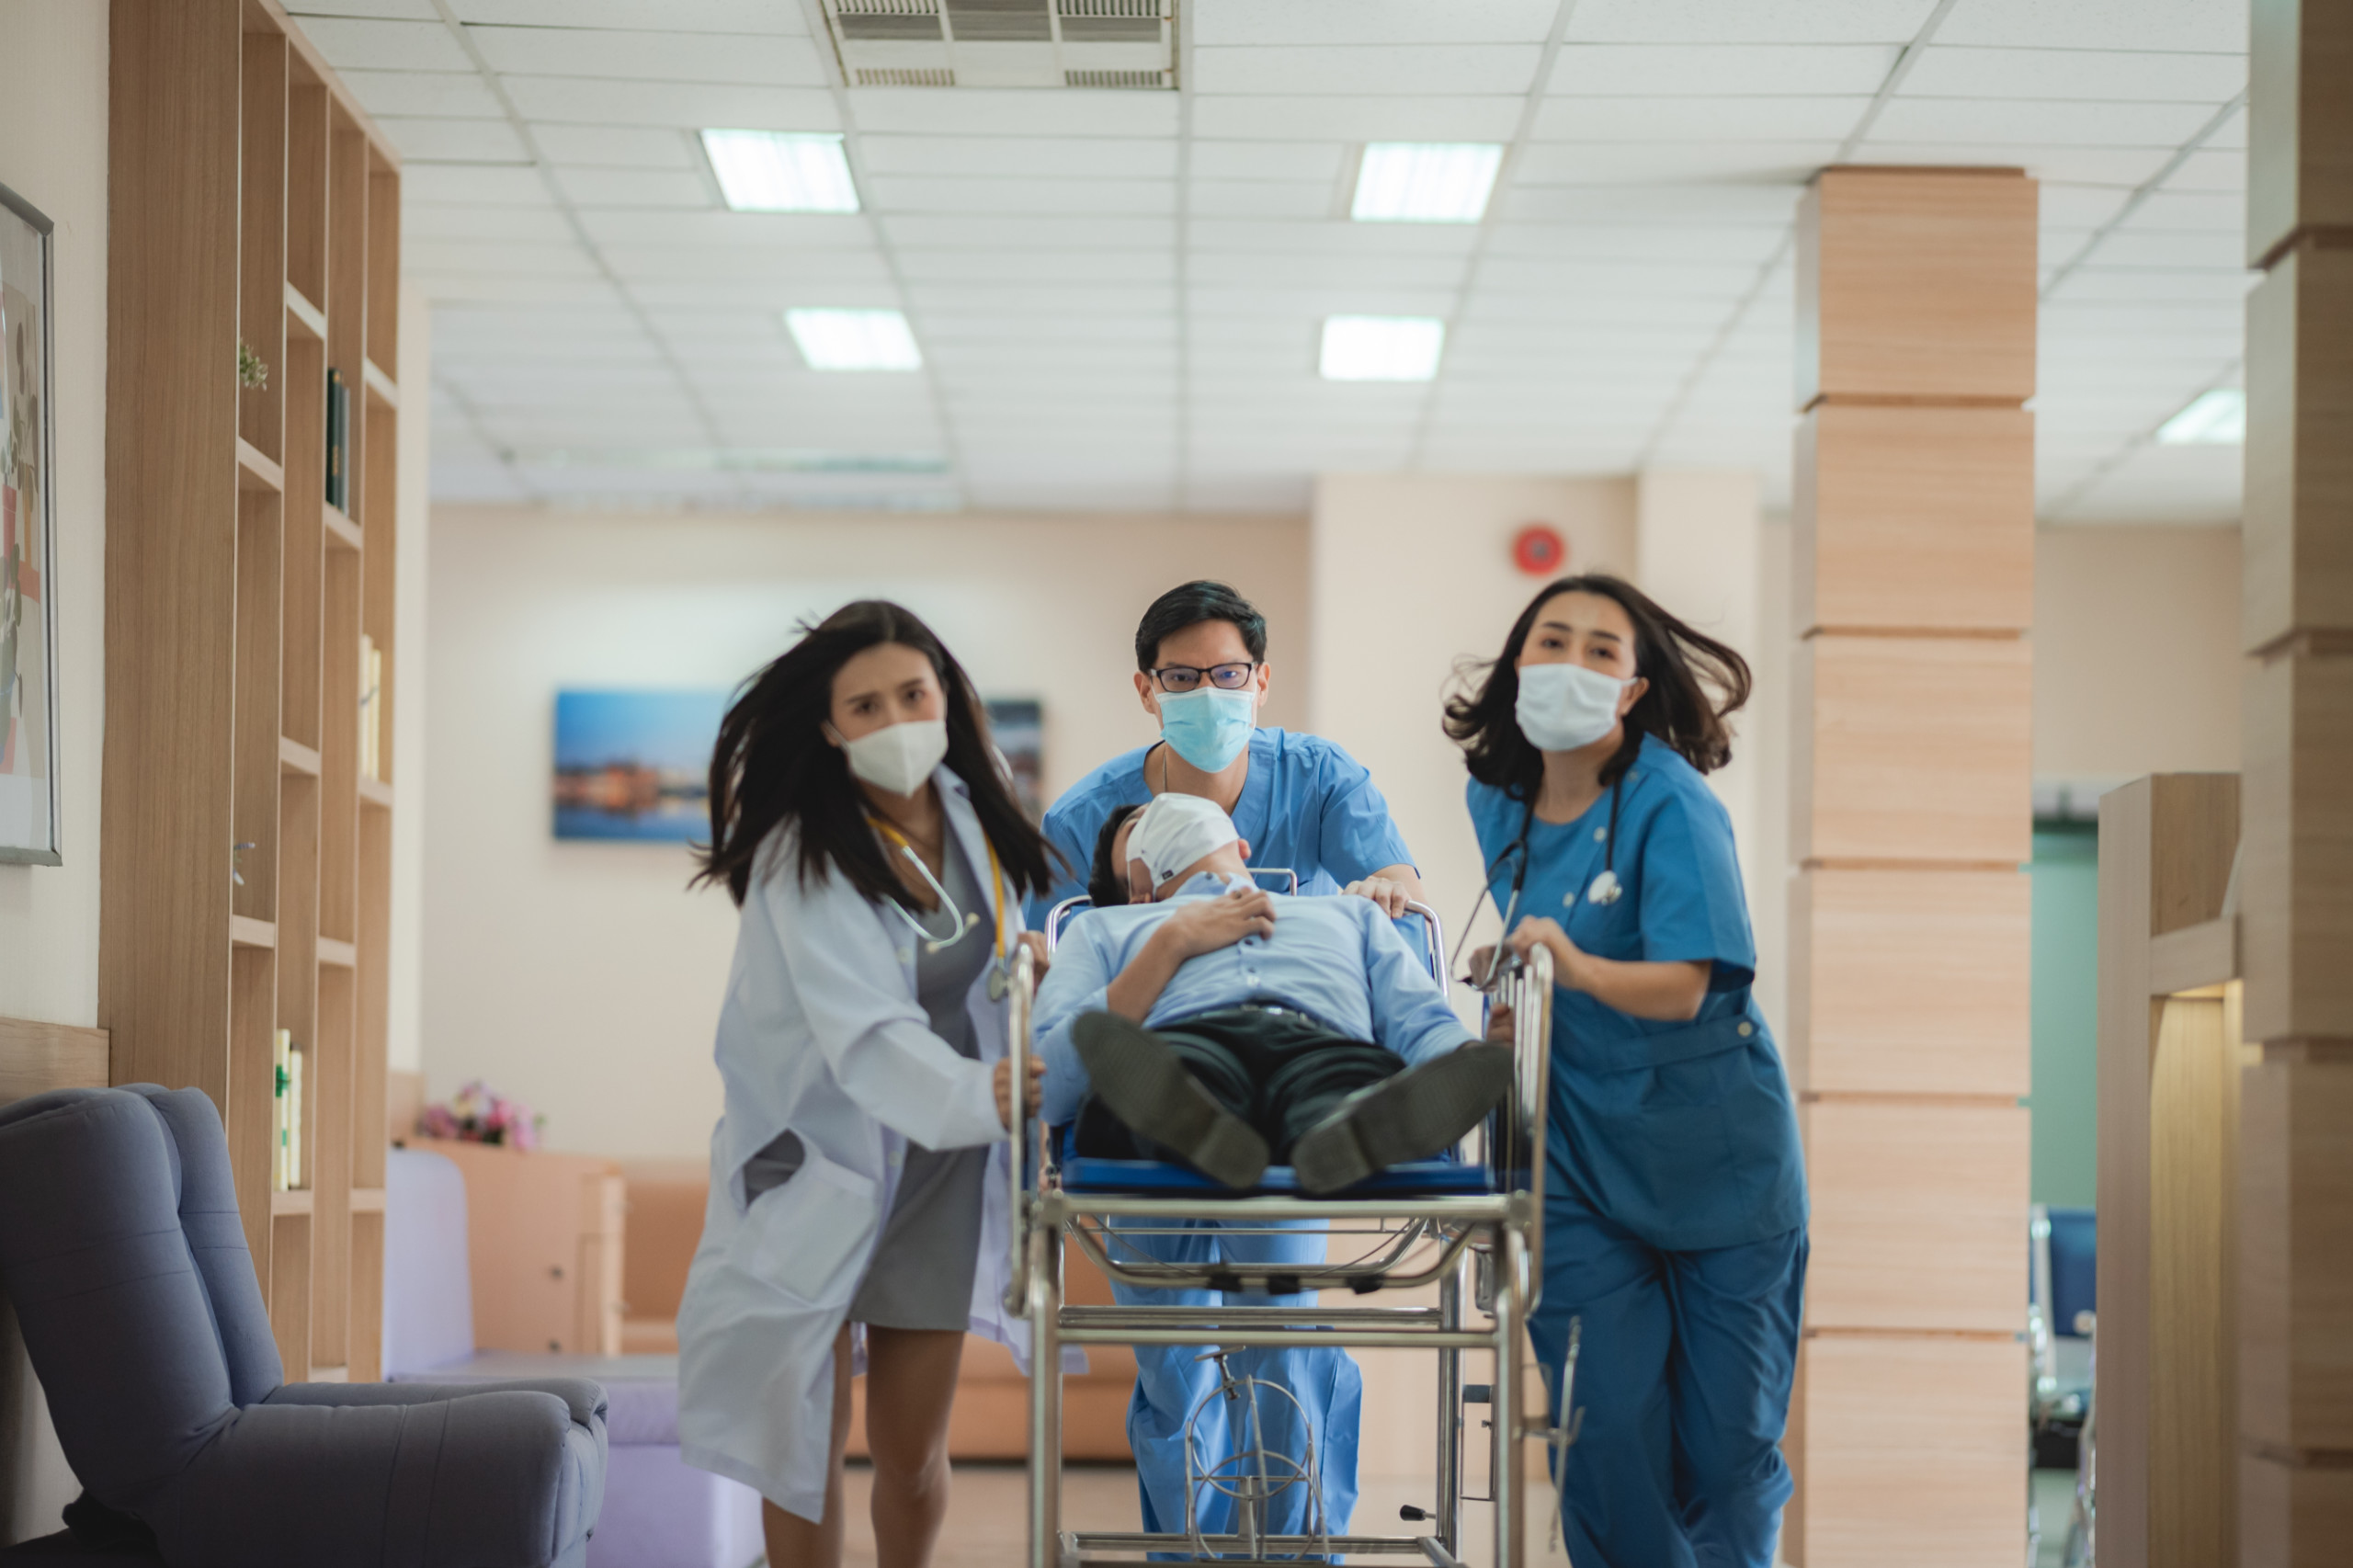 Ein gestresstes team schiebt ein Bett durch einen Flur im Krankenhaus. Die Pflegekrise und der Pflegenotstand stresst das Personal.